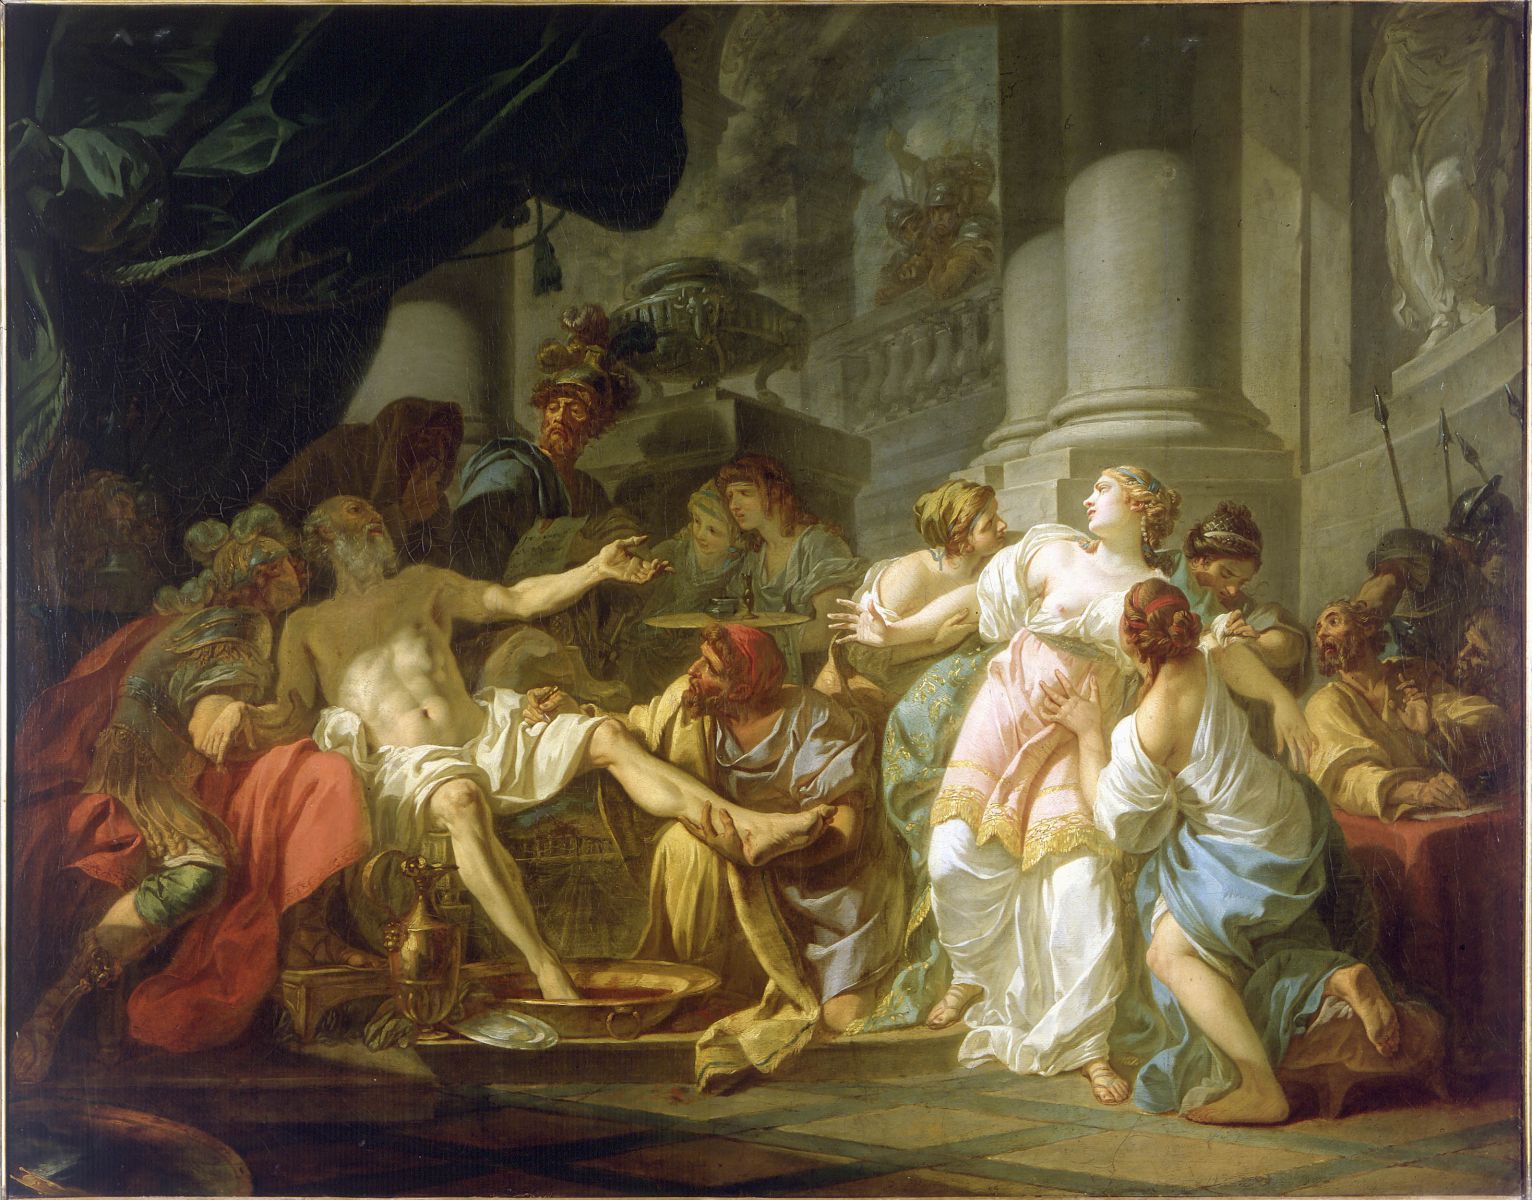 The death of Seneca, Jacques Louis David, 1748, Paris. 1825, Brussels